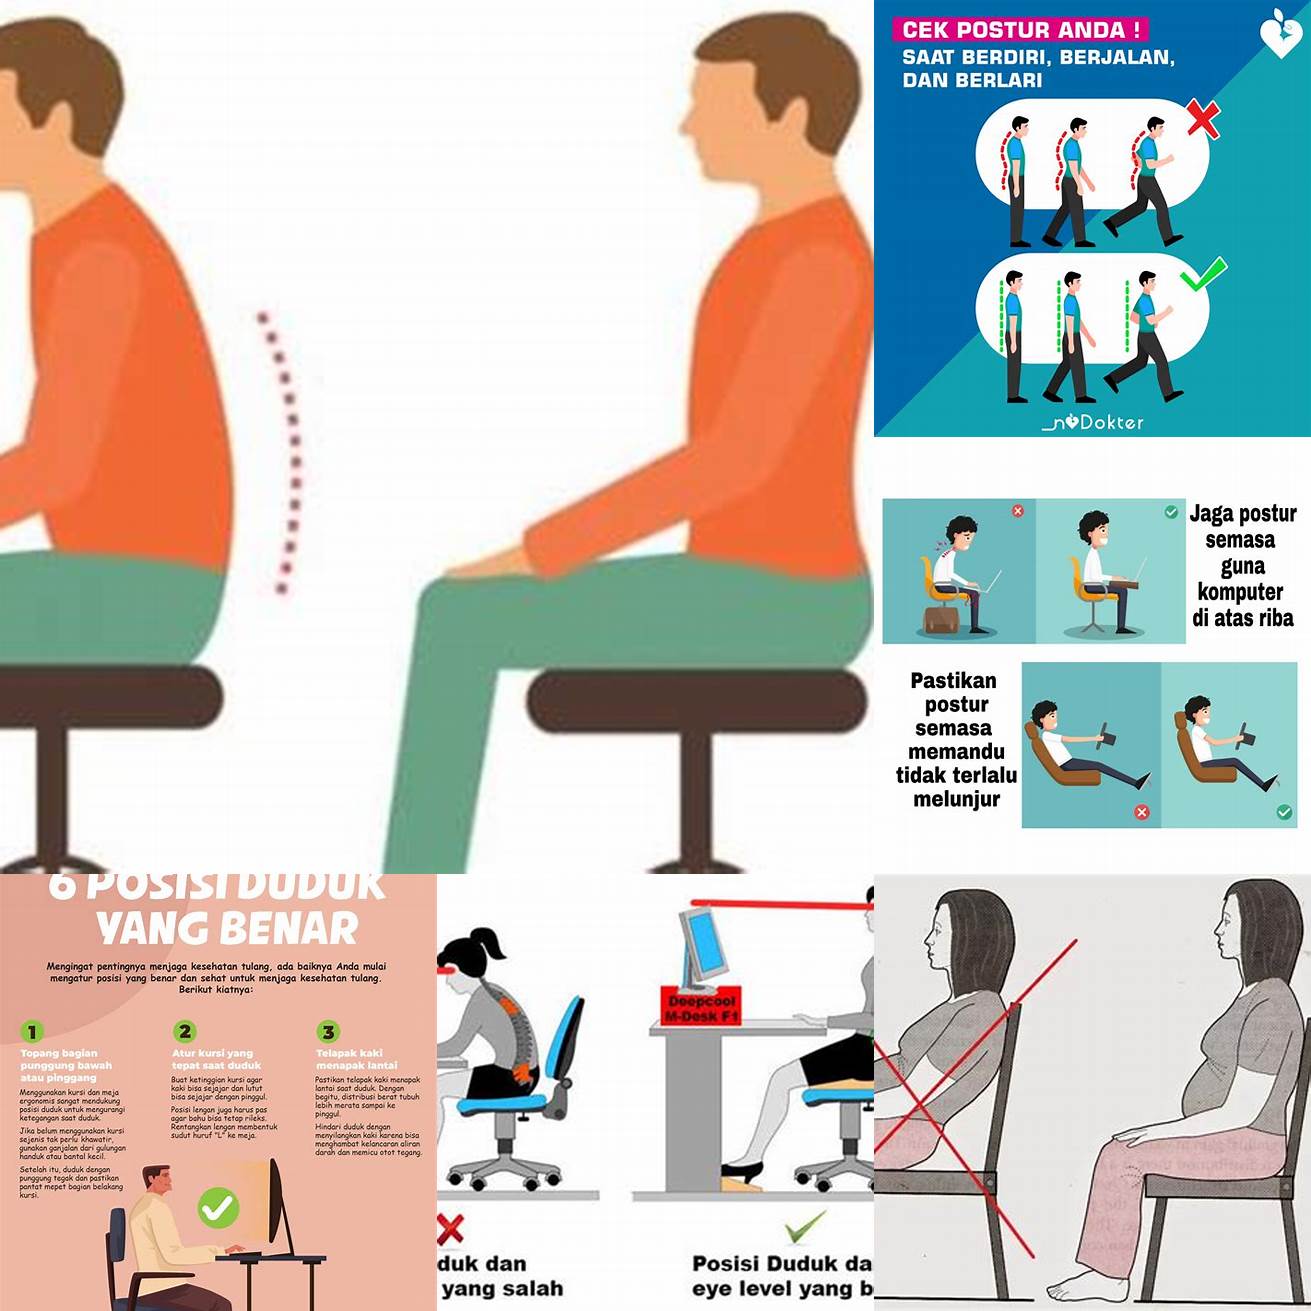 Jaga postur tubuh yang baik saat duduk atau berdiri